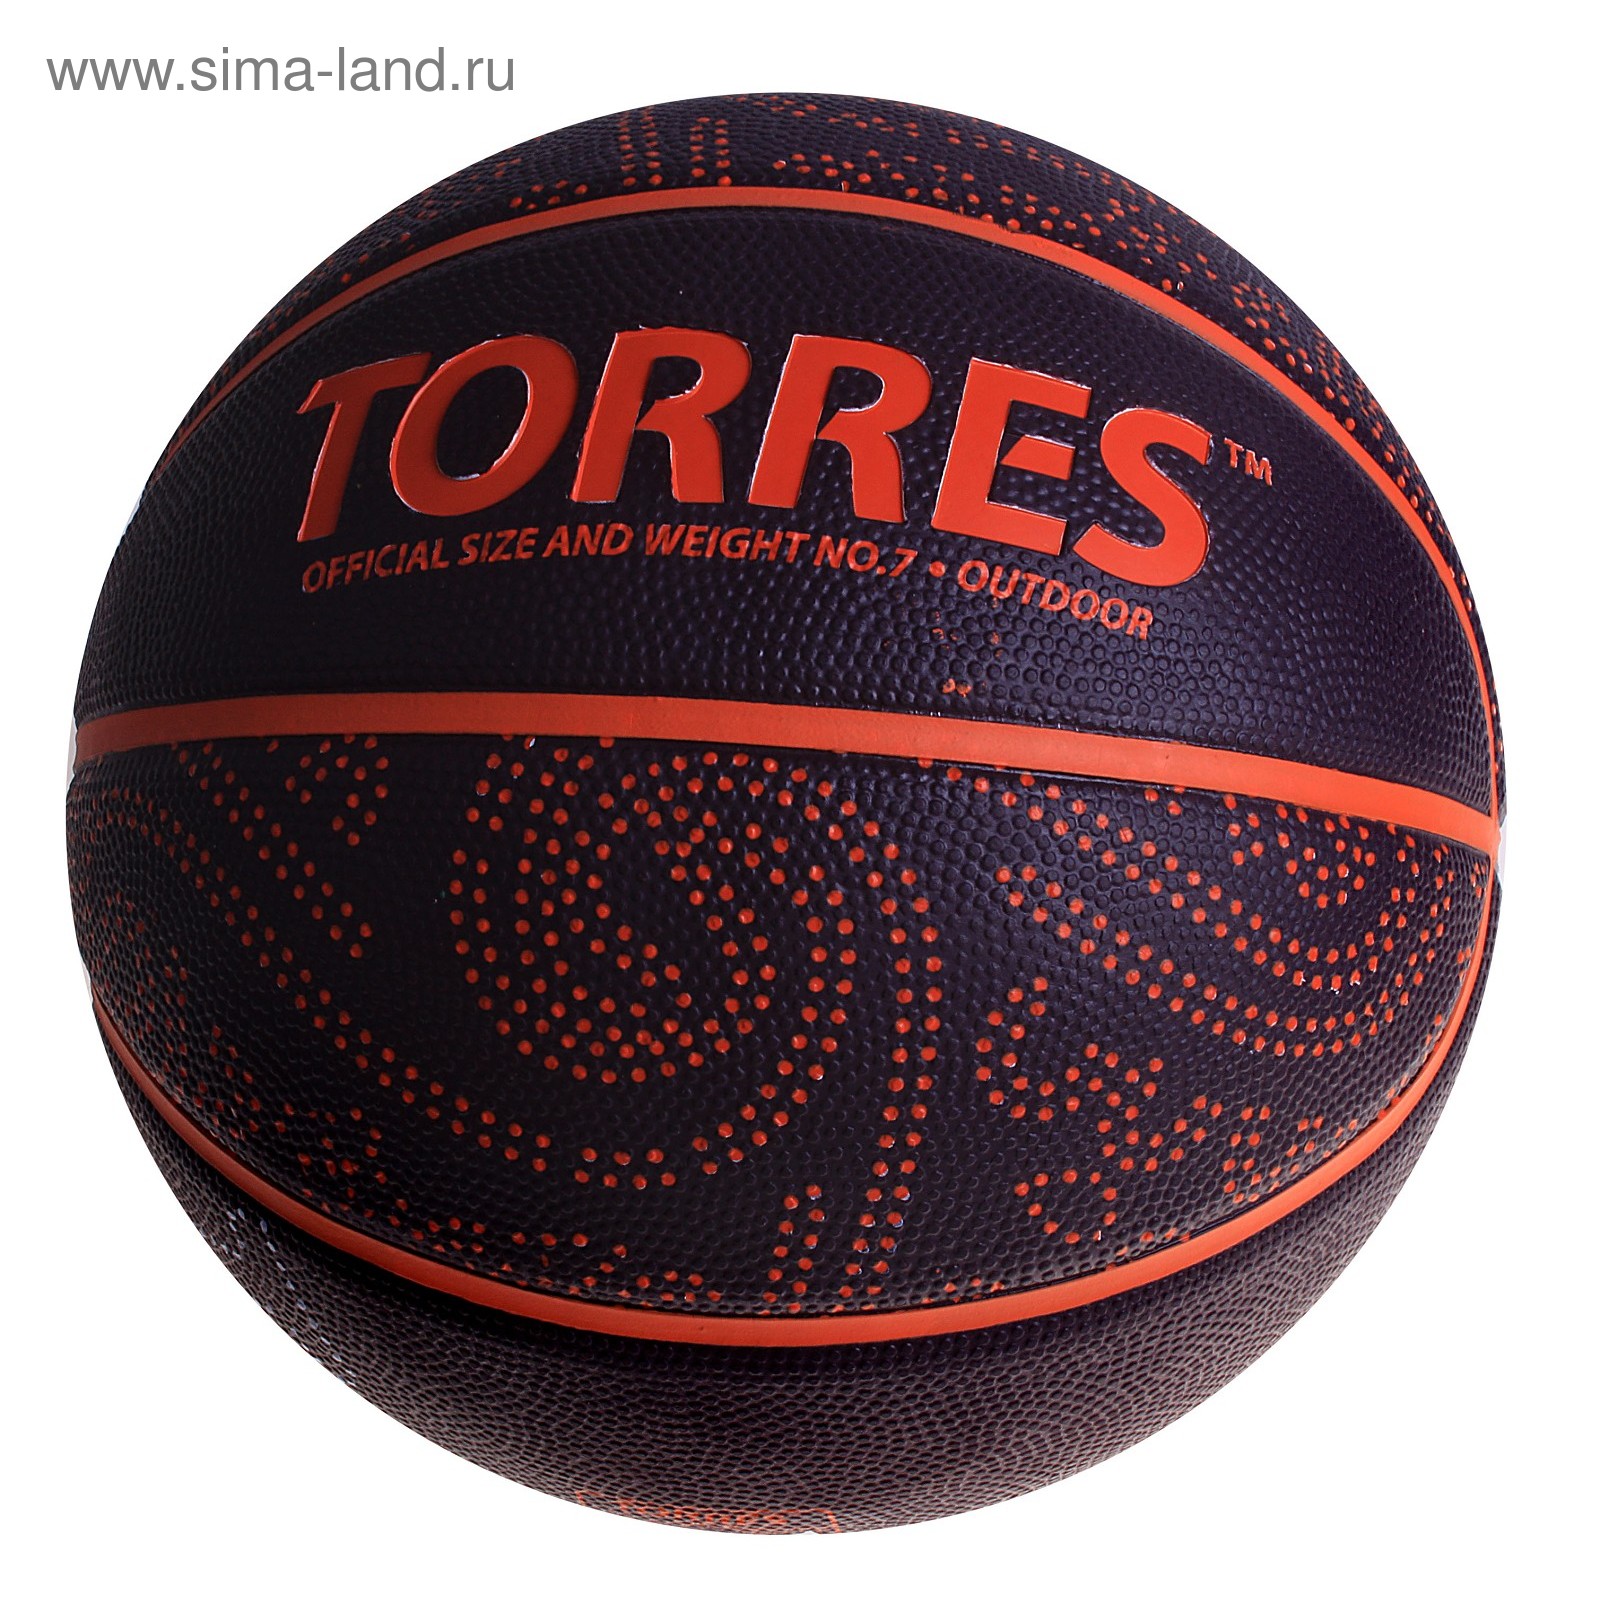 Мяч баскетбольный Torres TT, B00127, размер 7